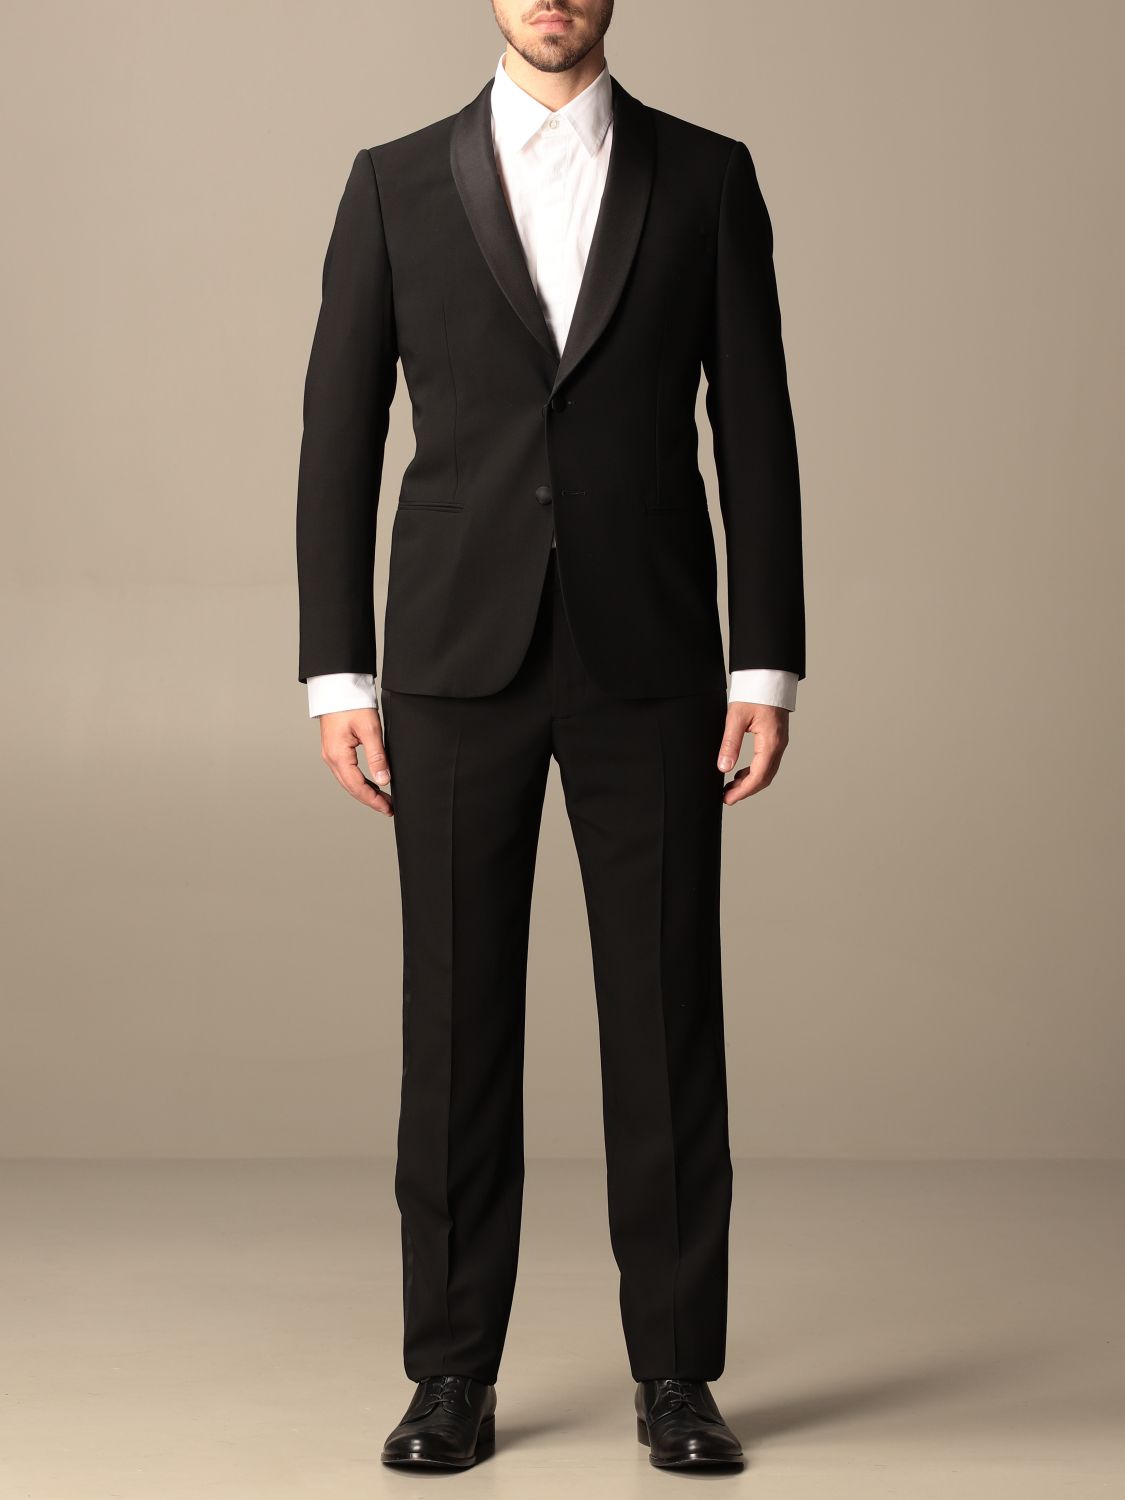 giorgio armani black suit